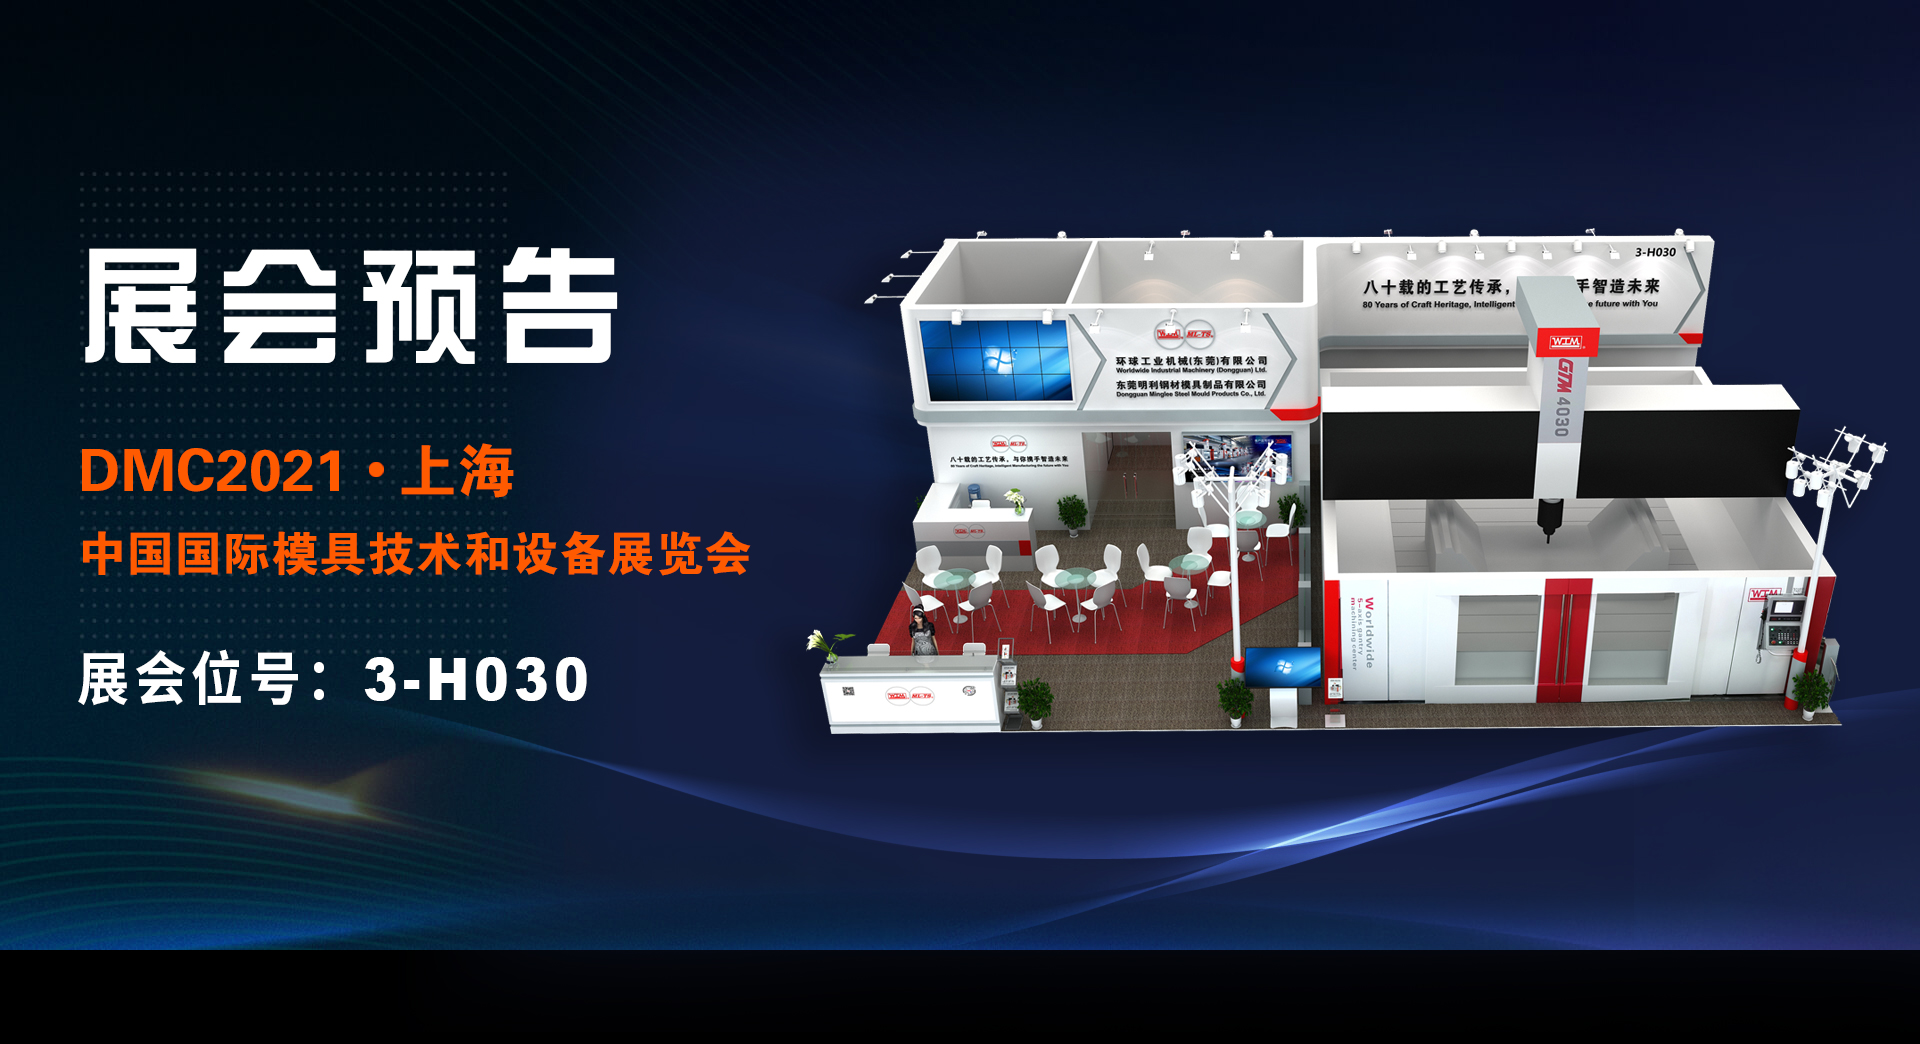 环球五轴龙门加工中心机床将首次亮相上海模具展